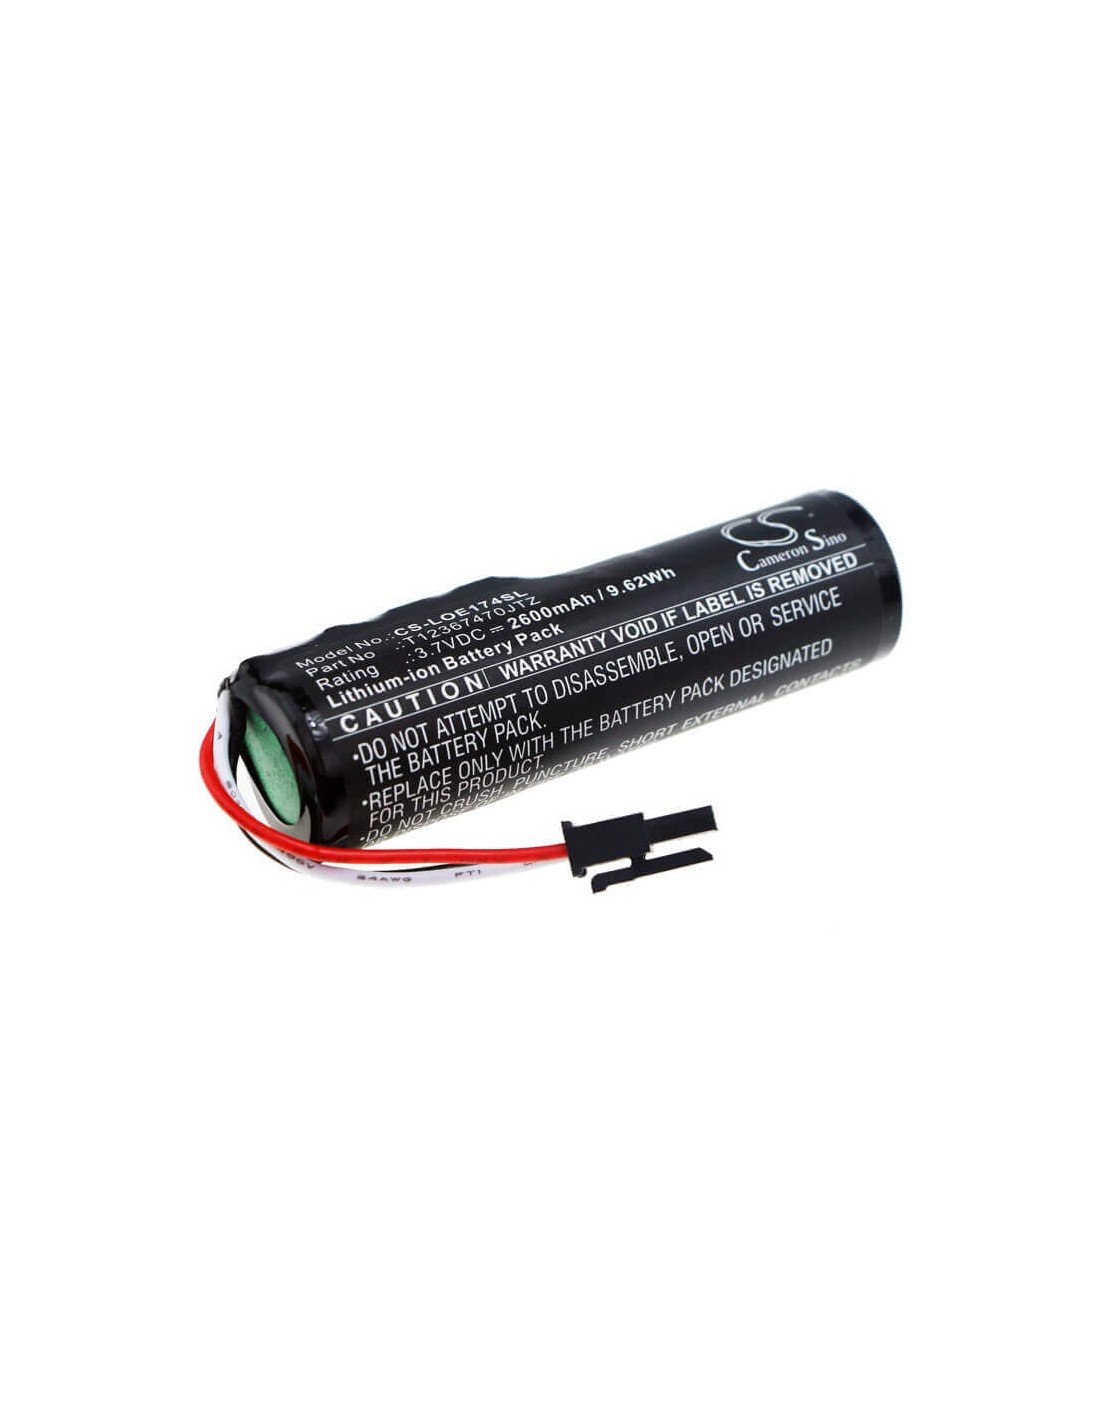 Battery for Logitech, 1749lz0psas8, 884-000741, 984-000967 3.7V, 2600mAh - 9.62Wh